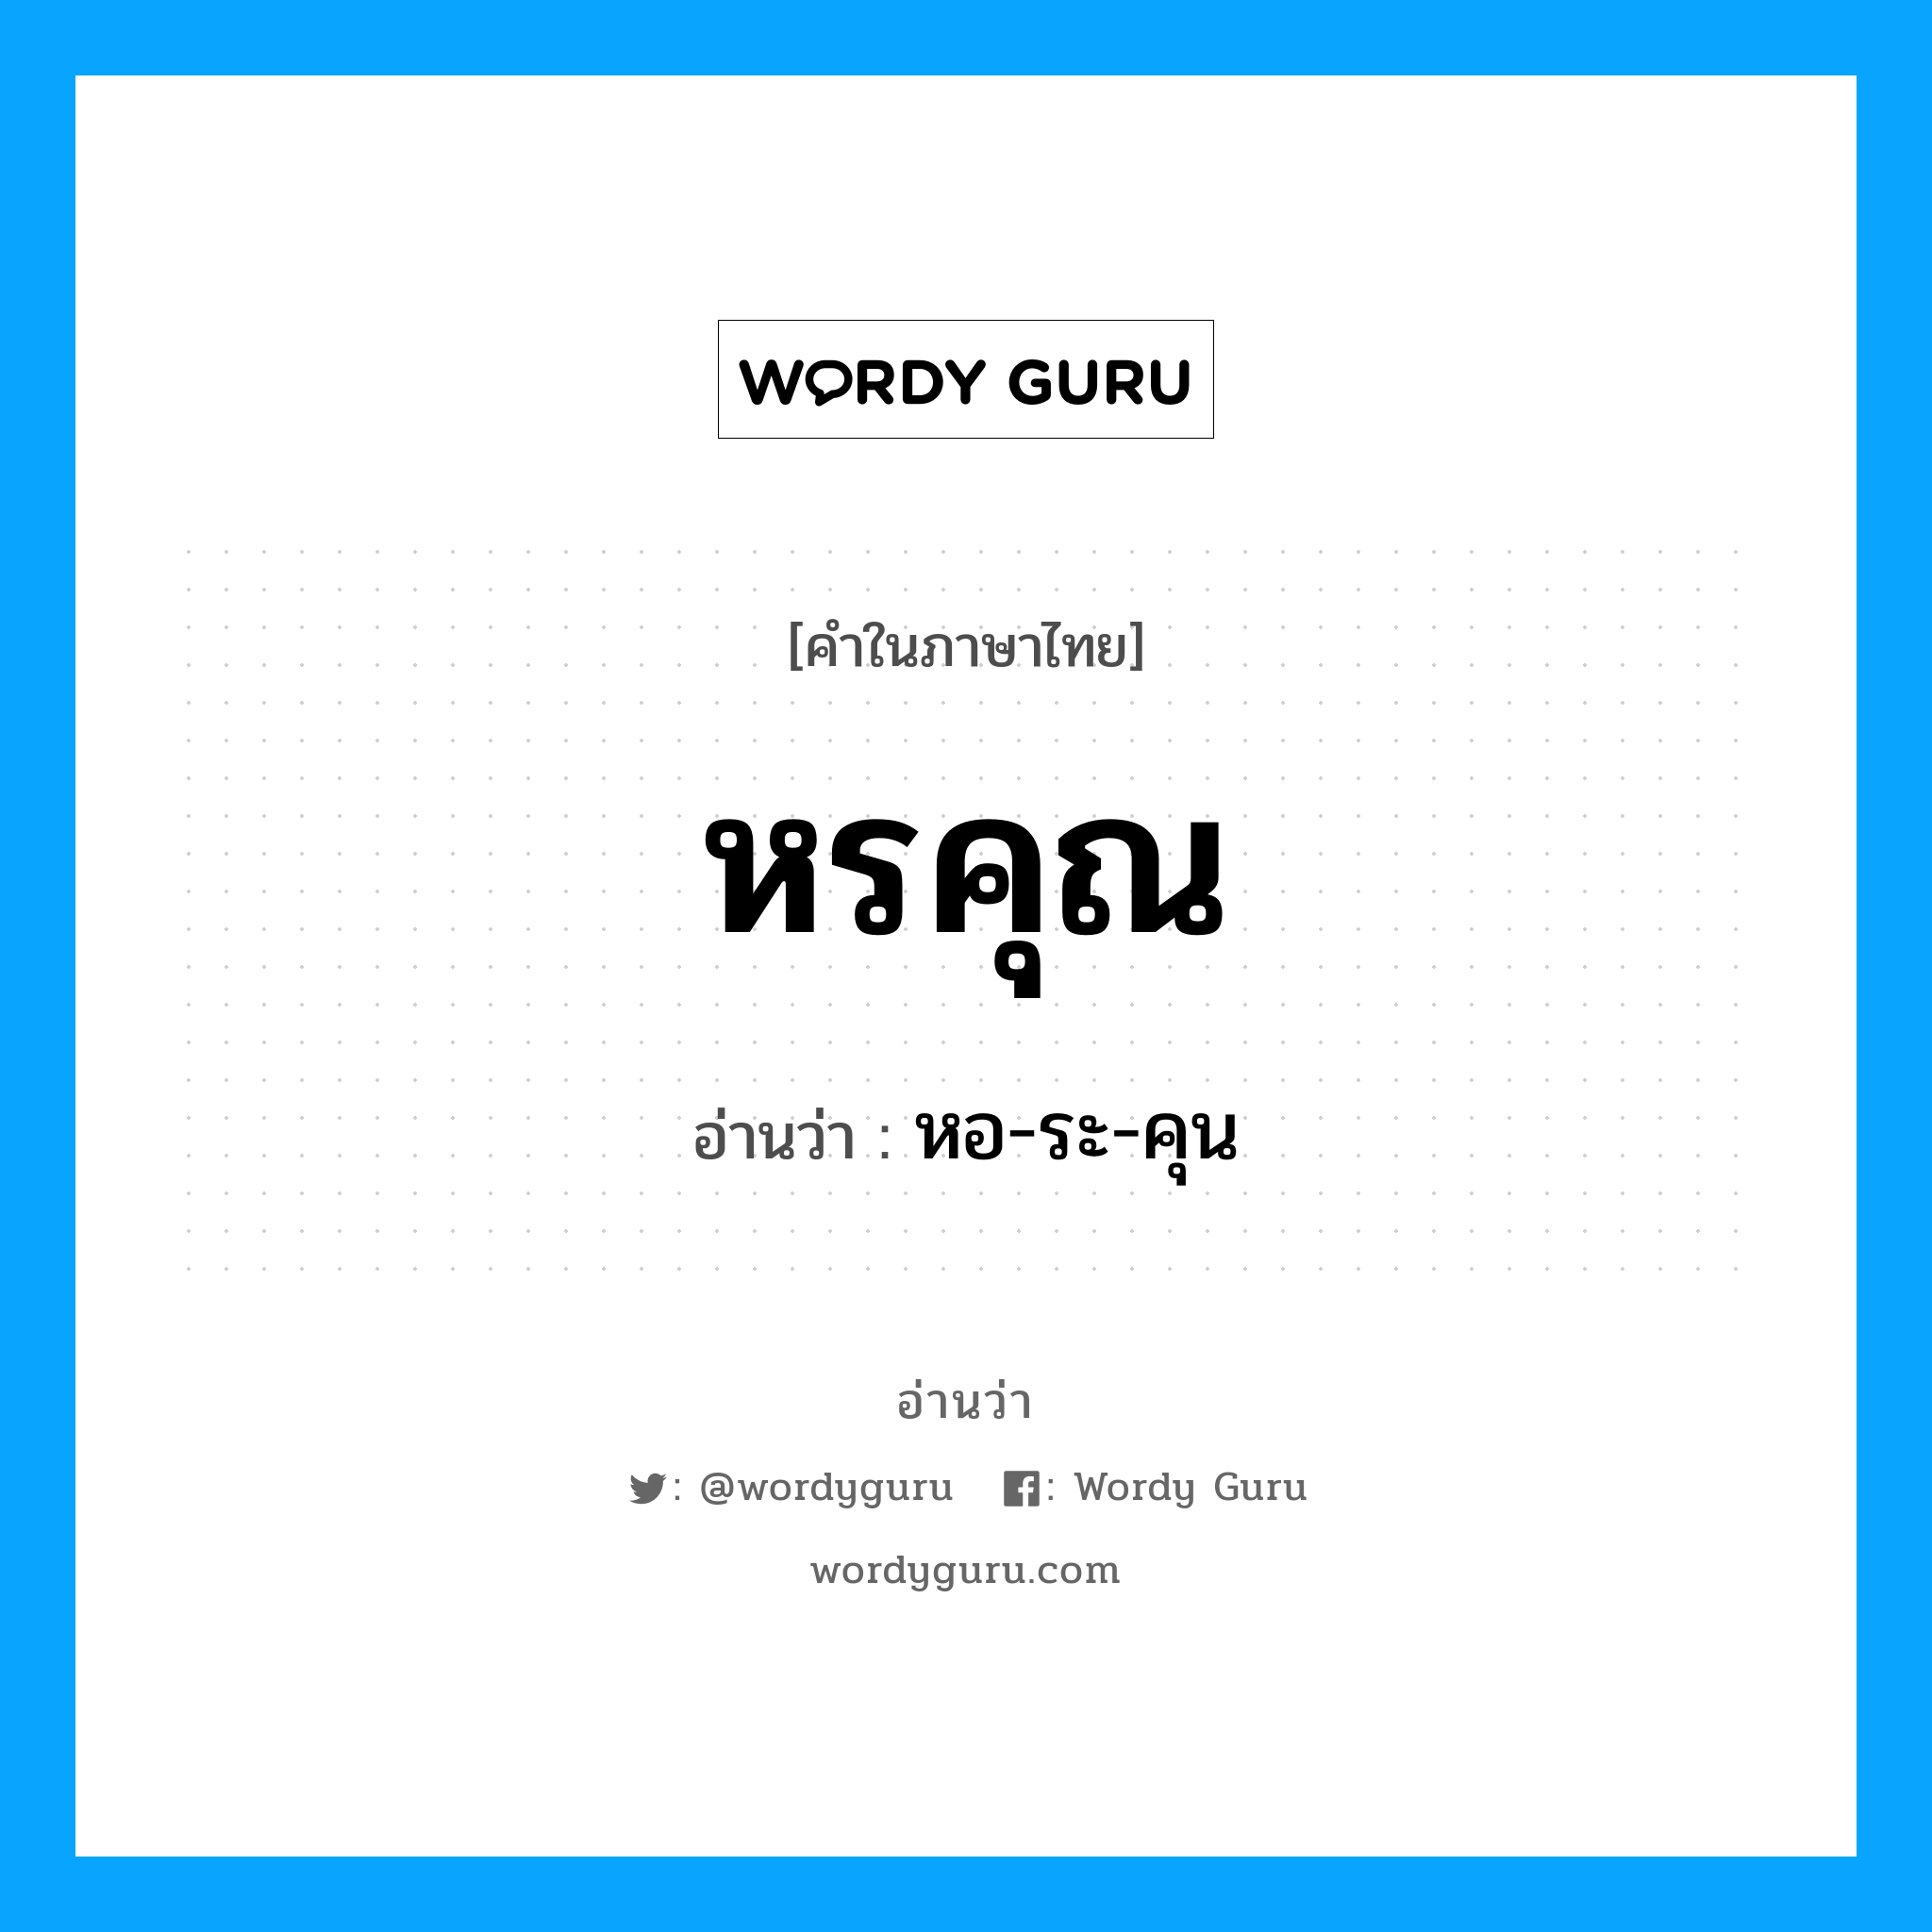 หอ-ระ-คุน เป็นคำอ่านของคำไหน?, คำในภาษาไทย หอ-ระ-คุน อ่านว่า หรคุณ